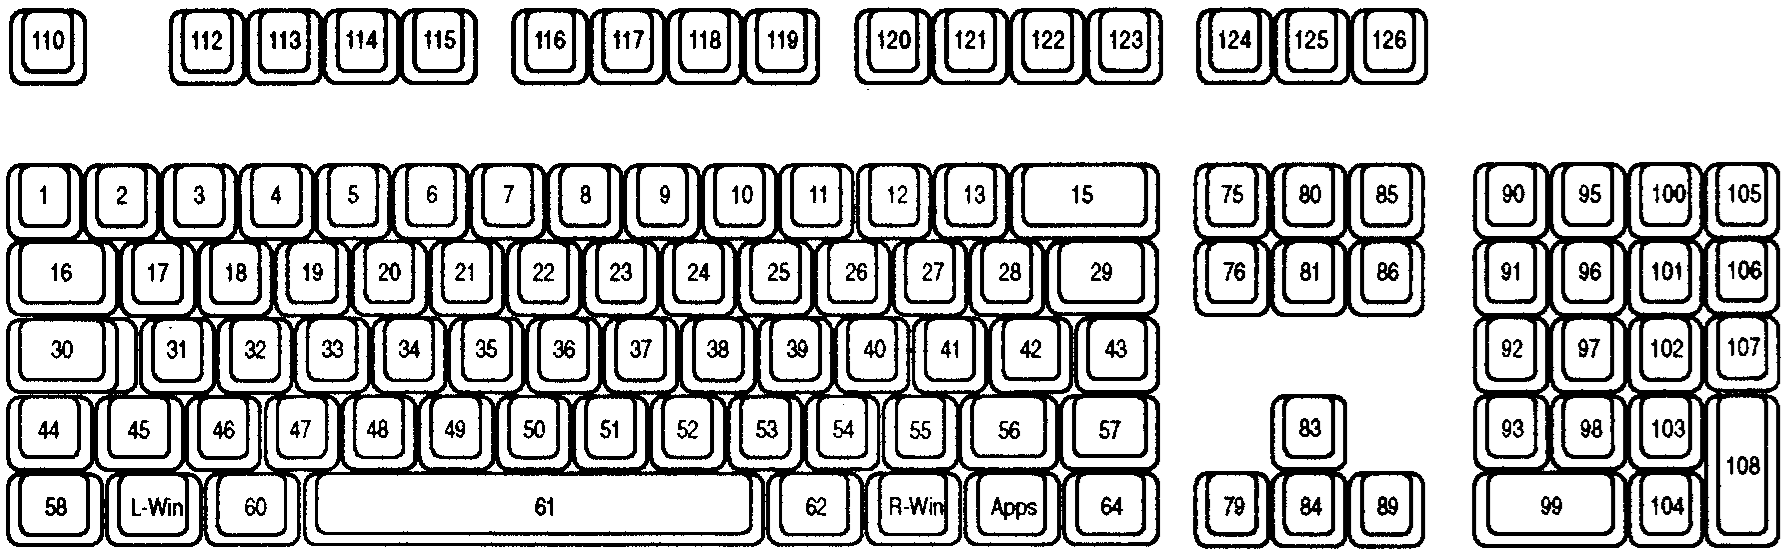 Multiplikation Nuværende inden for Übersicht über die Tastatureingabe - Win32 apps | Microsoft Learn